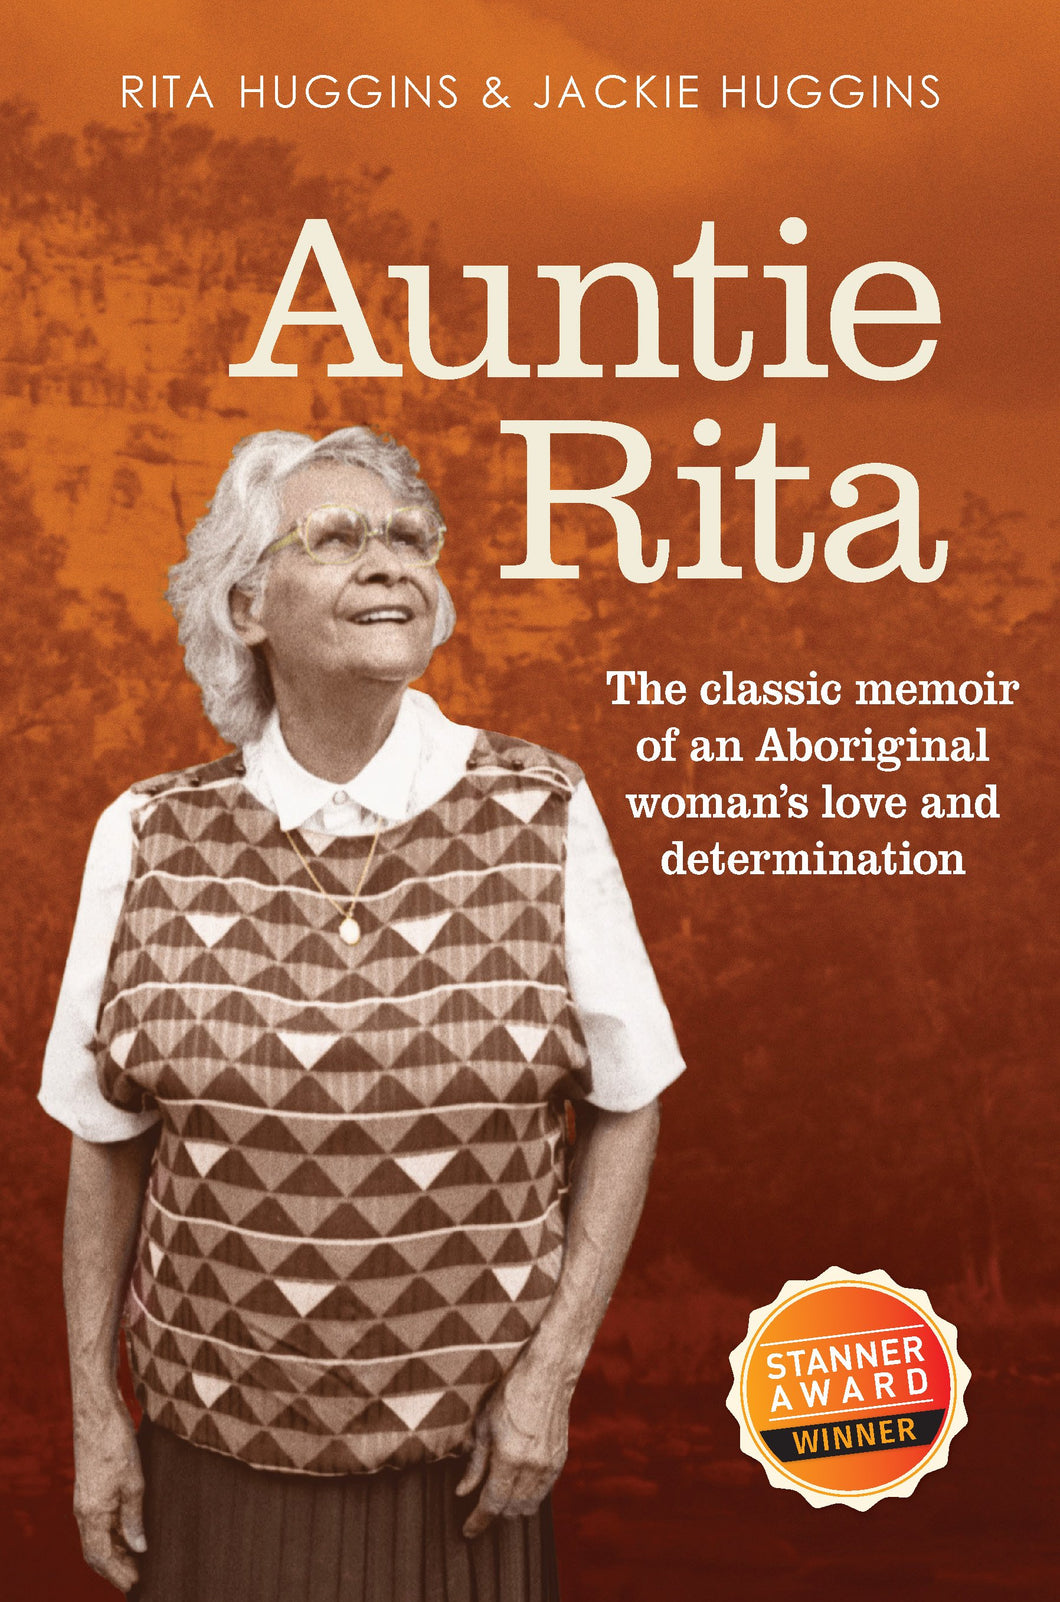 Auntie Rita by Jackie Huggins and Rita Huggins